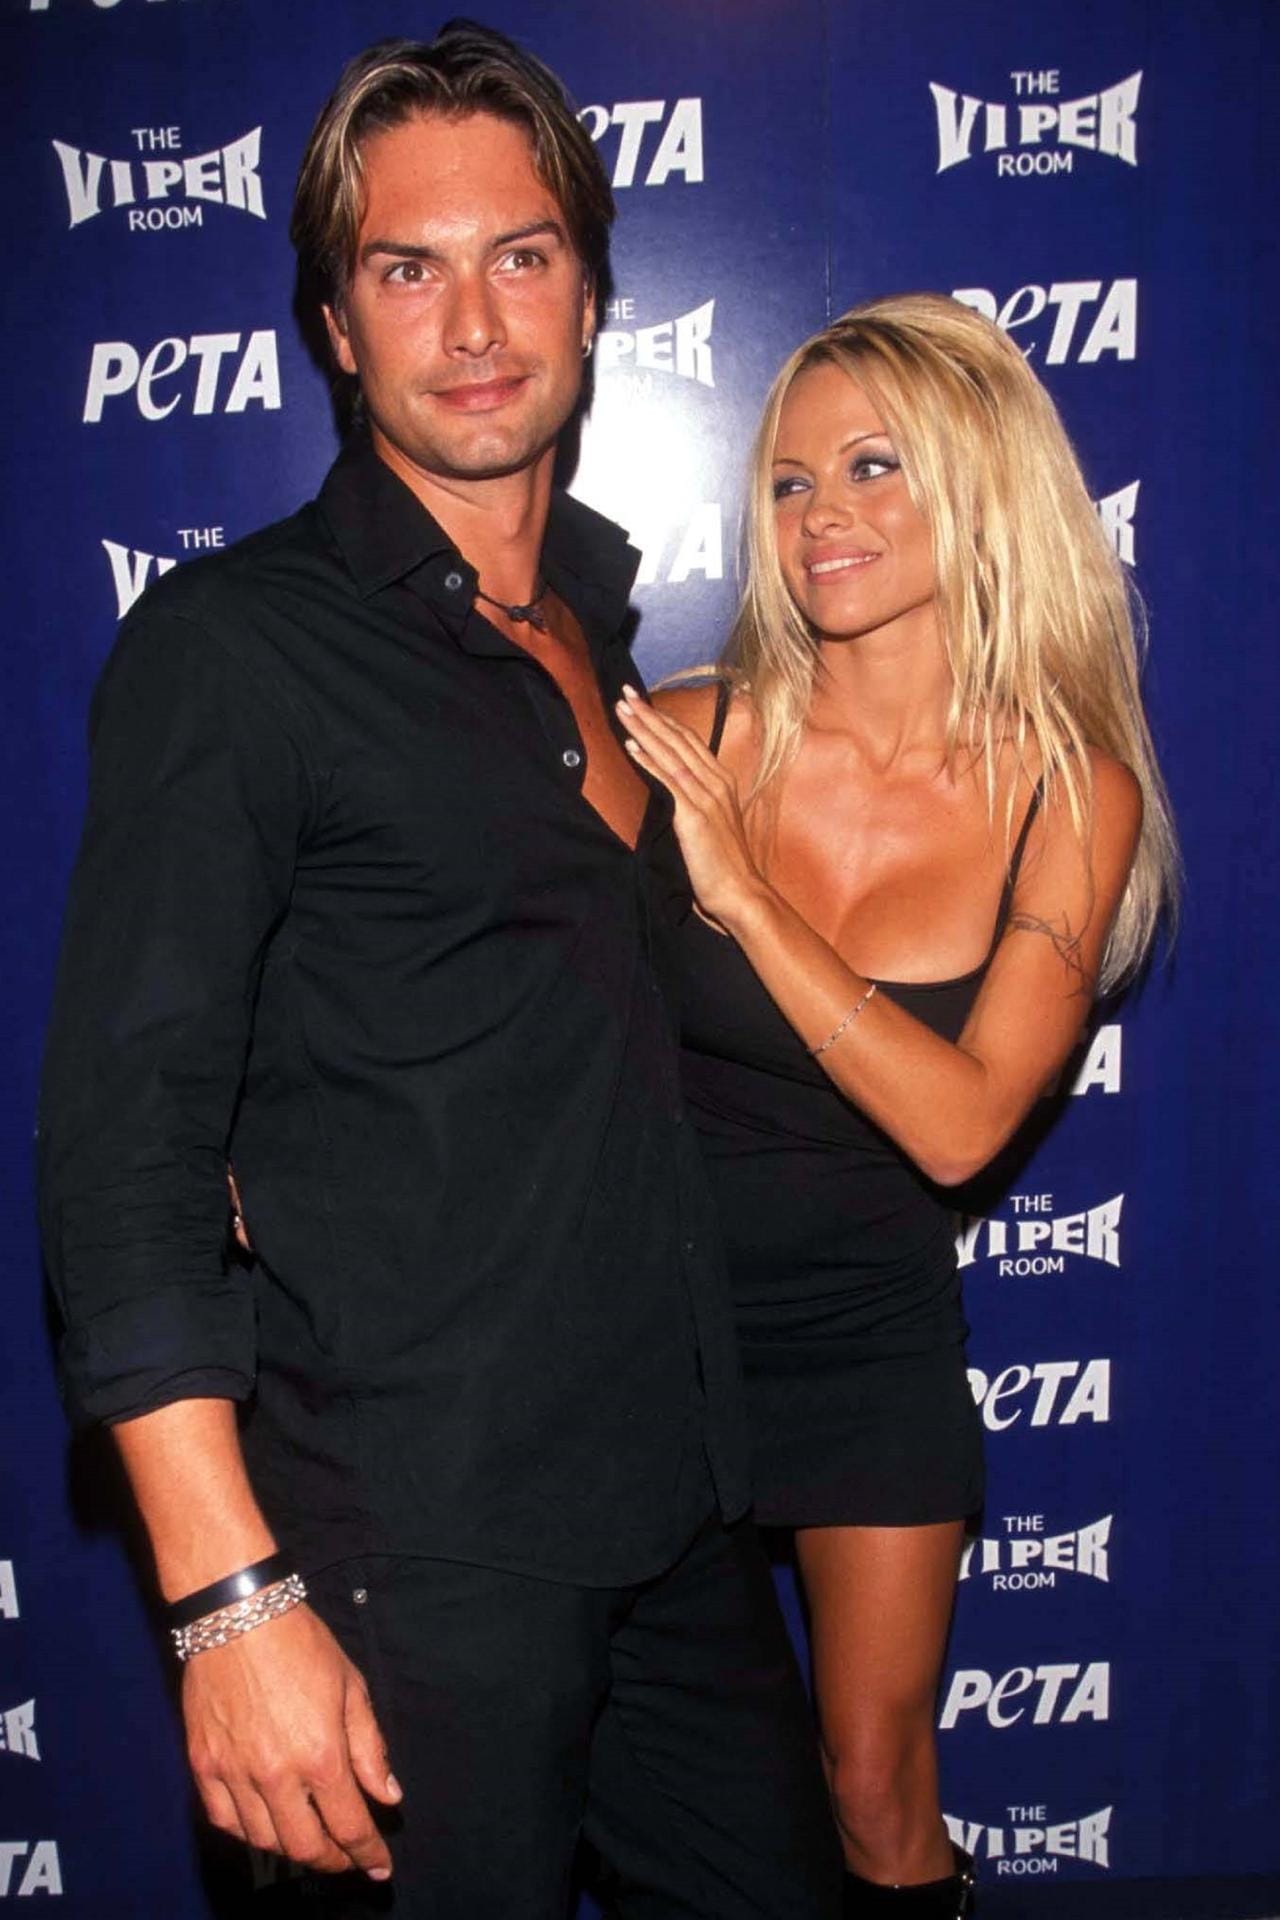 2001: Pamela Anderson verliebte sich in das schwedischen Männermodel Marcus Schenkenberg, als sie sah, wie er einen Vogel aus einer Toilette rettete.